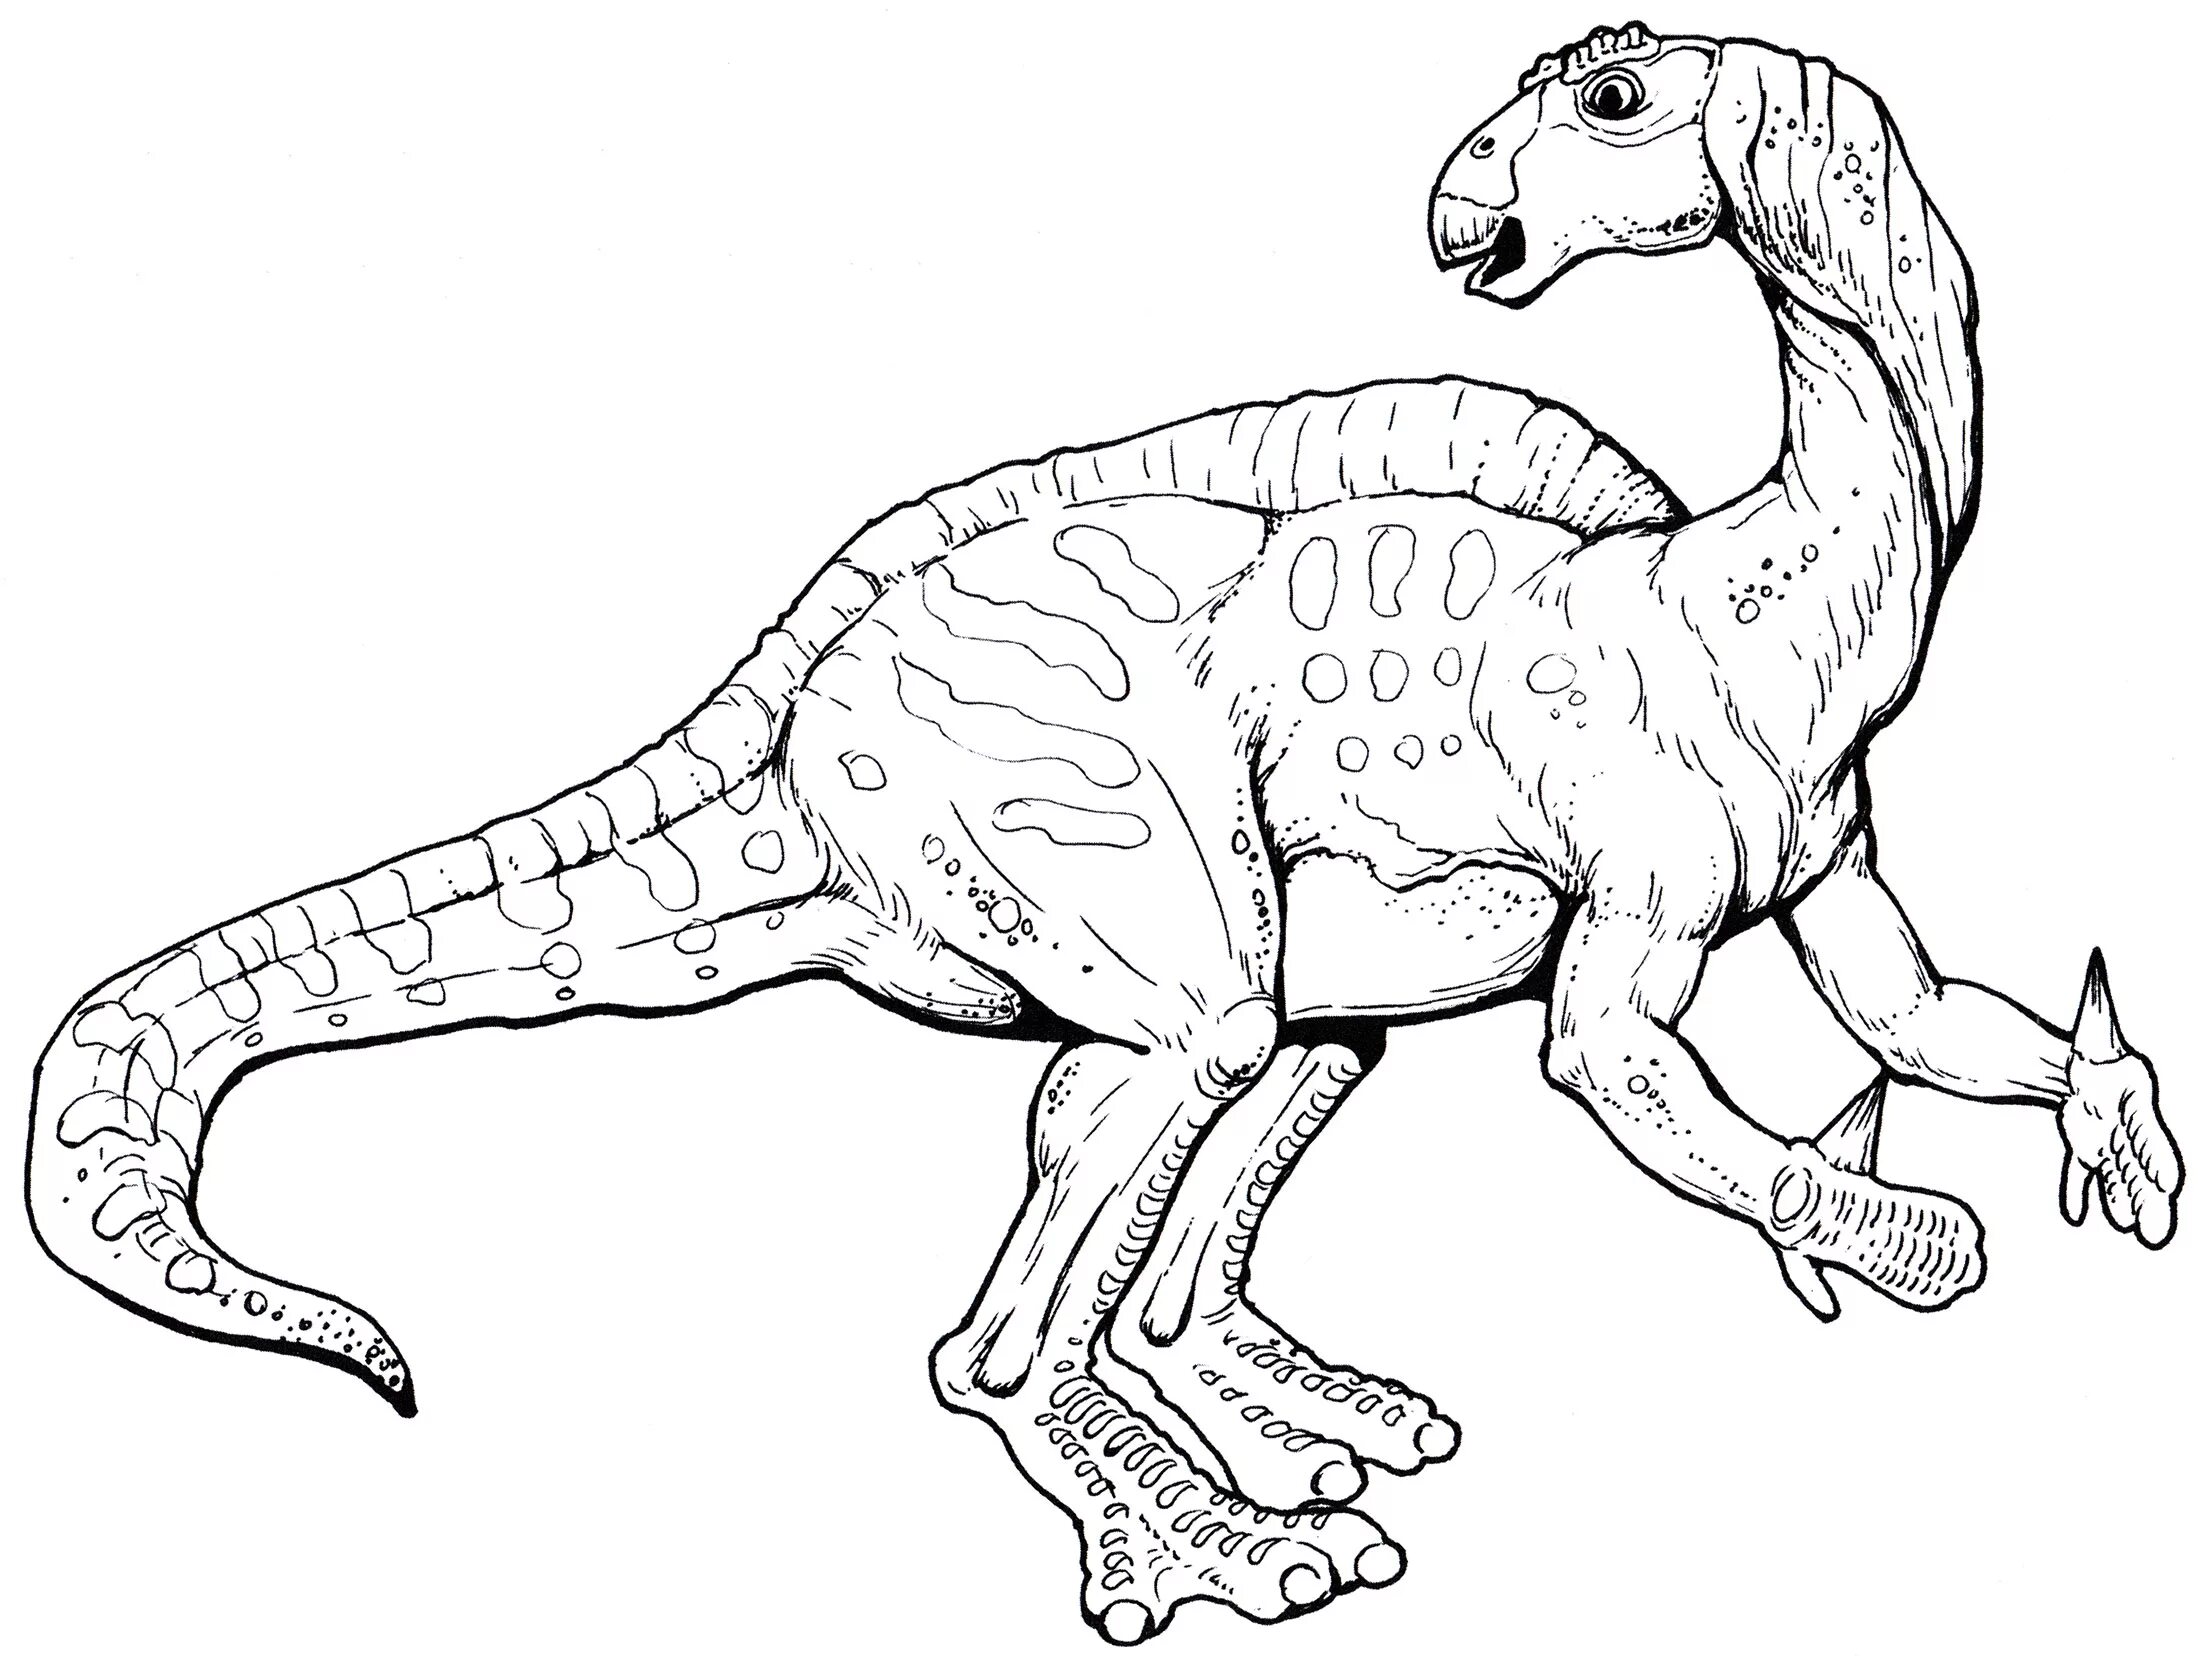 Iguanodon #1